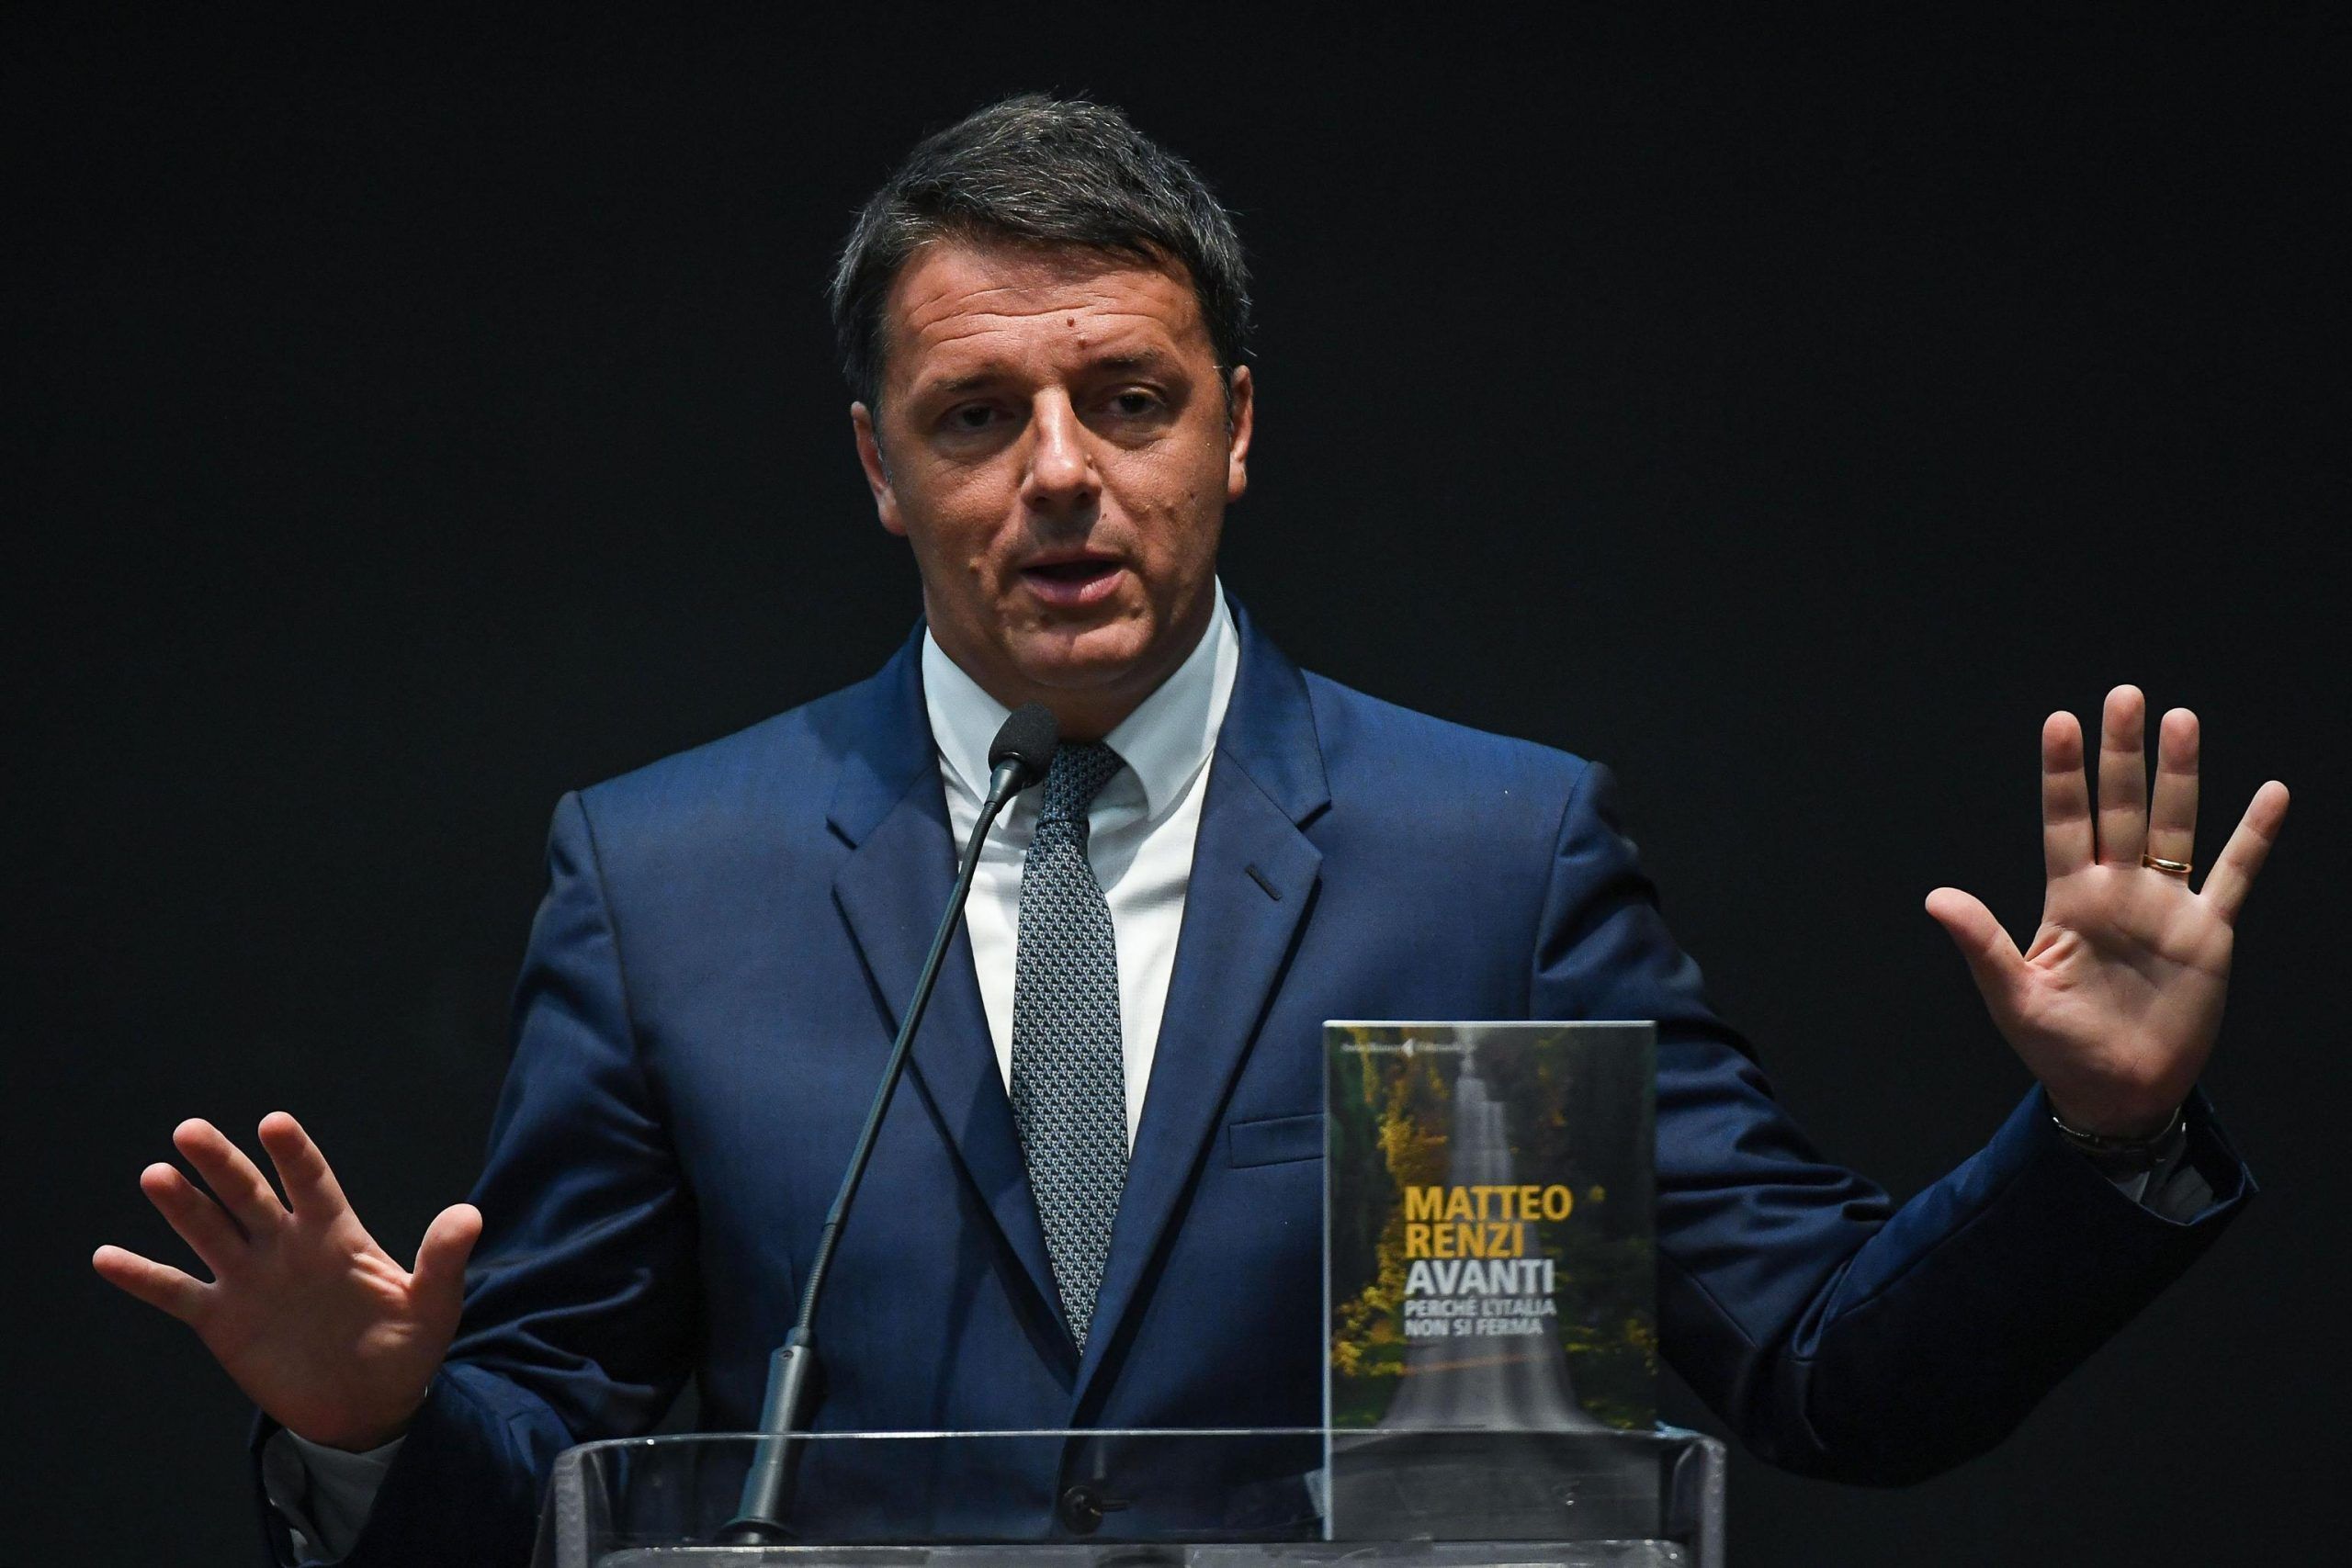 ++ Renzi, non c'è e non ci sarà divisione Pd governo ++